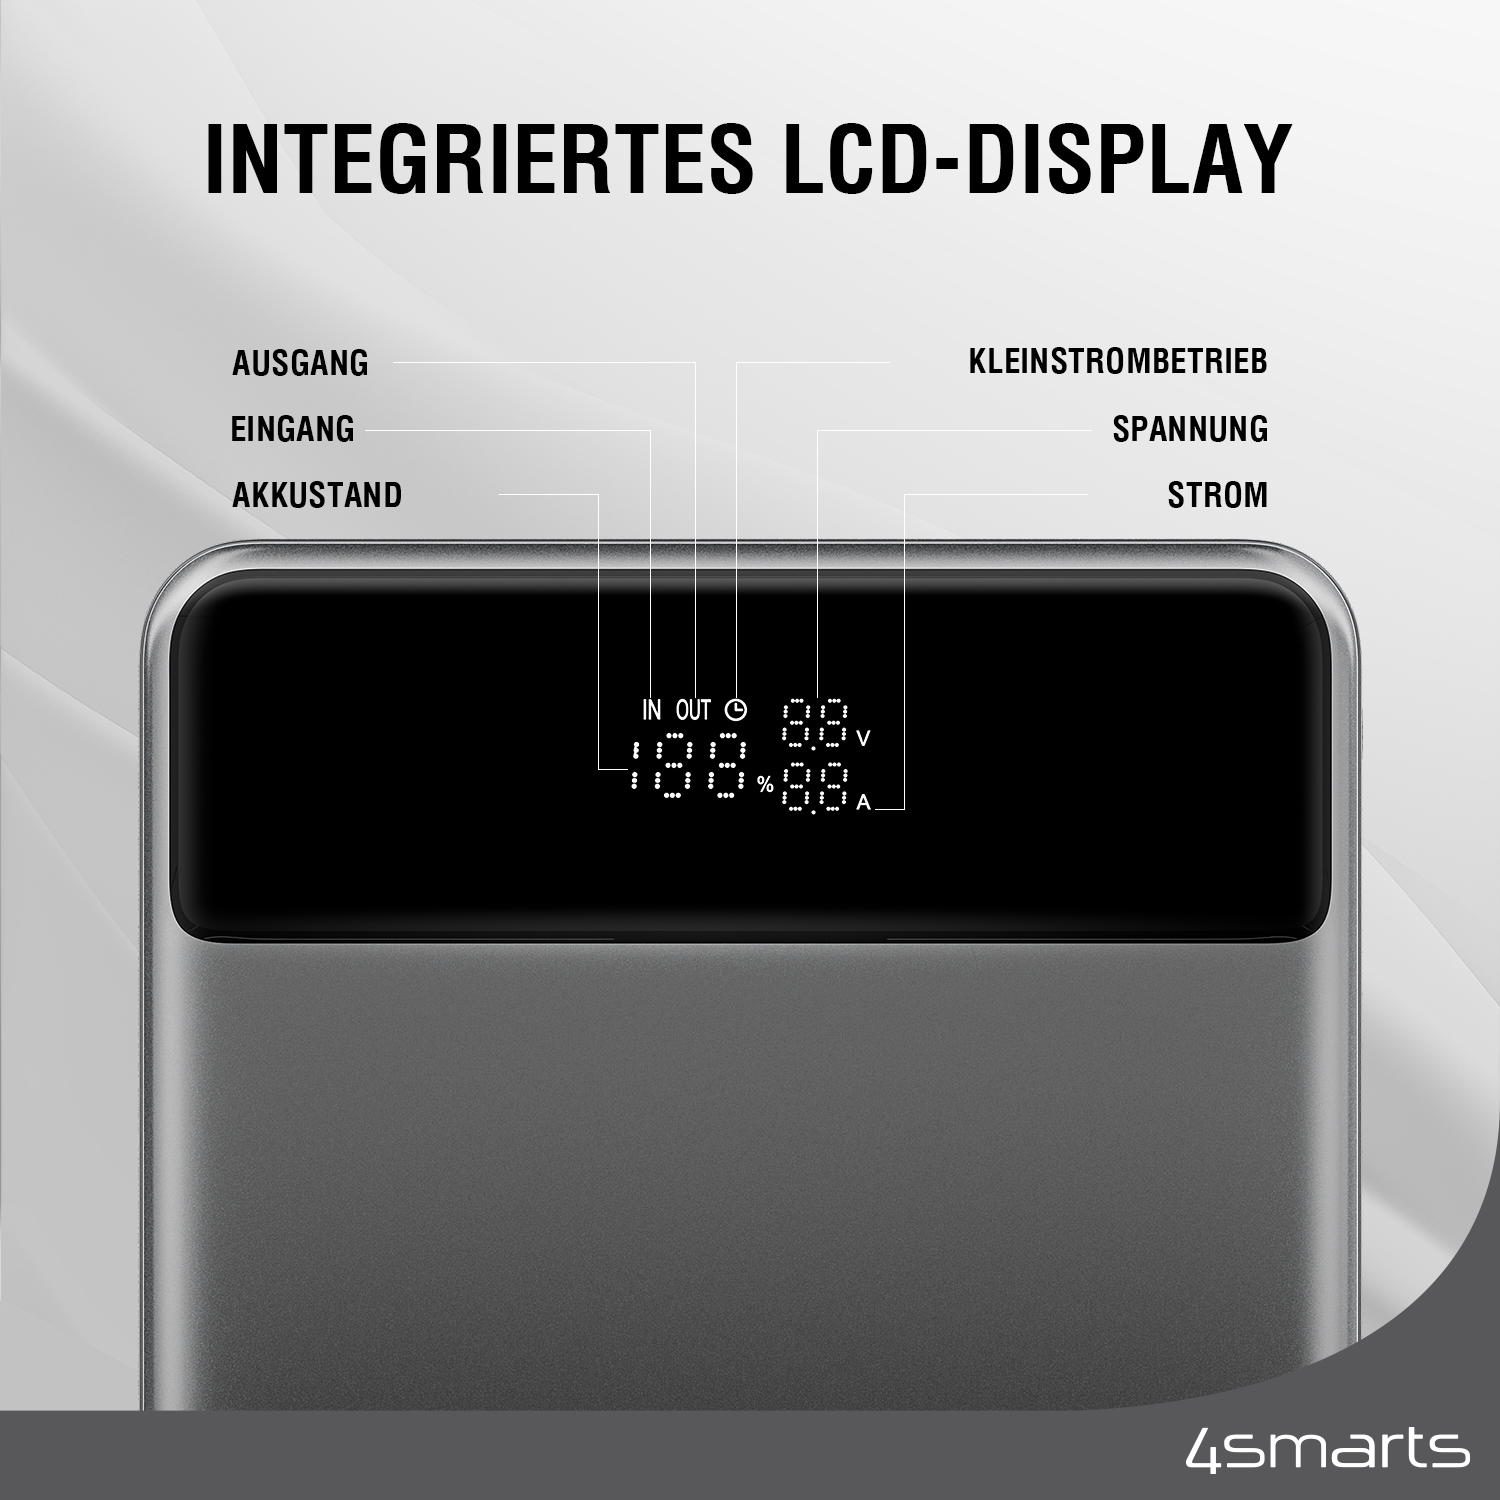 Die 4smarts Powerbank Enterprise Slim 20000mAh verfügt über ein integriertes LCD-Display.